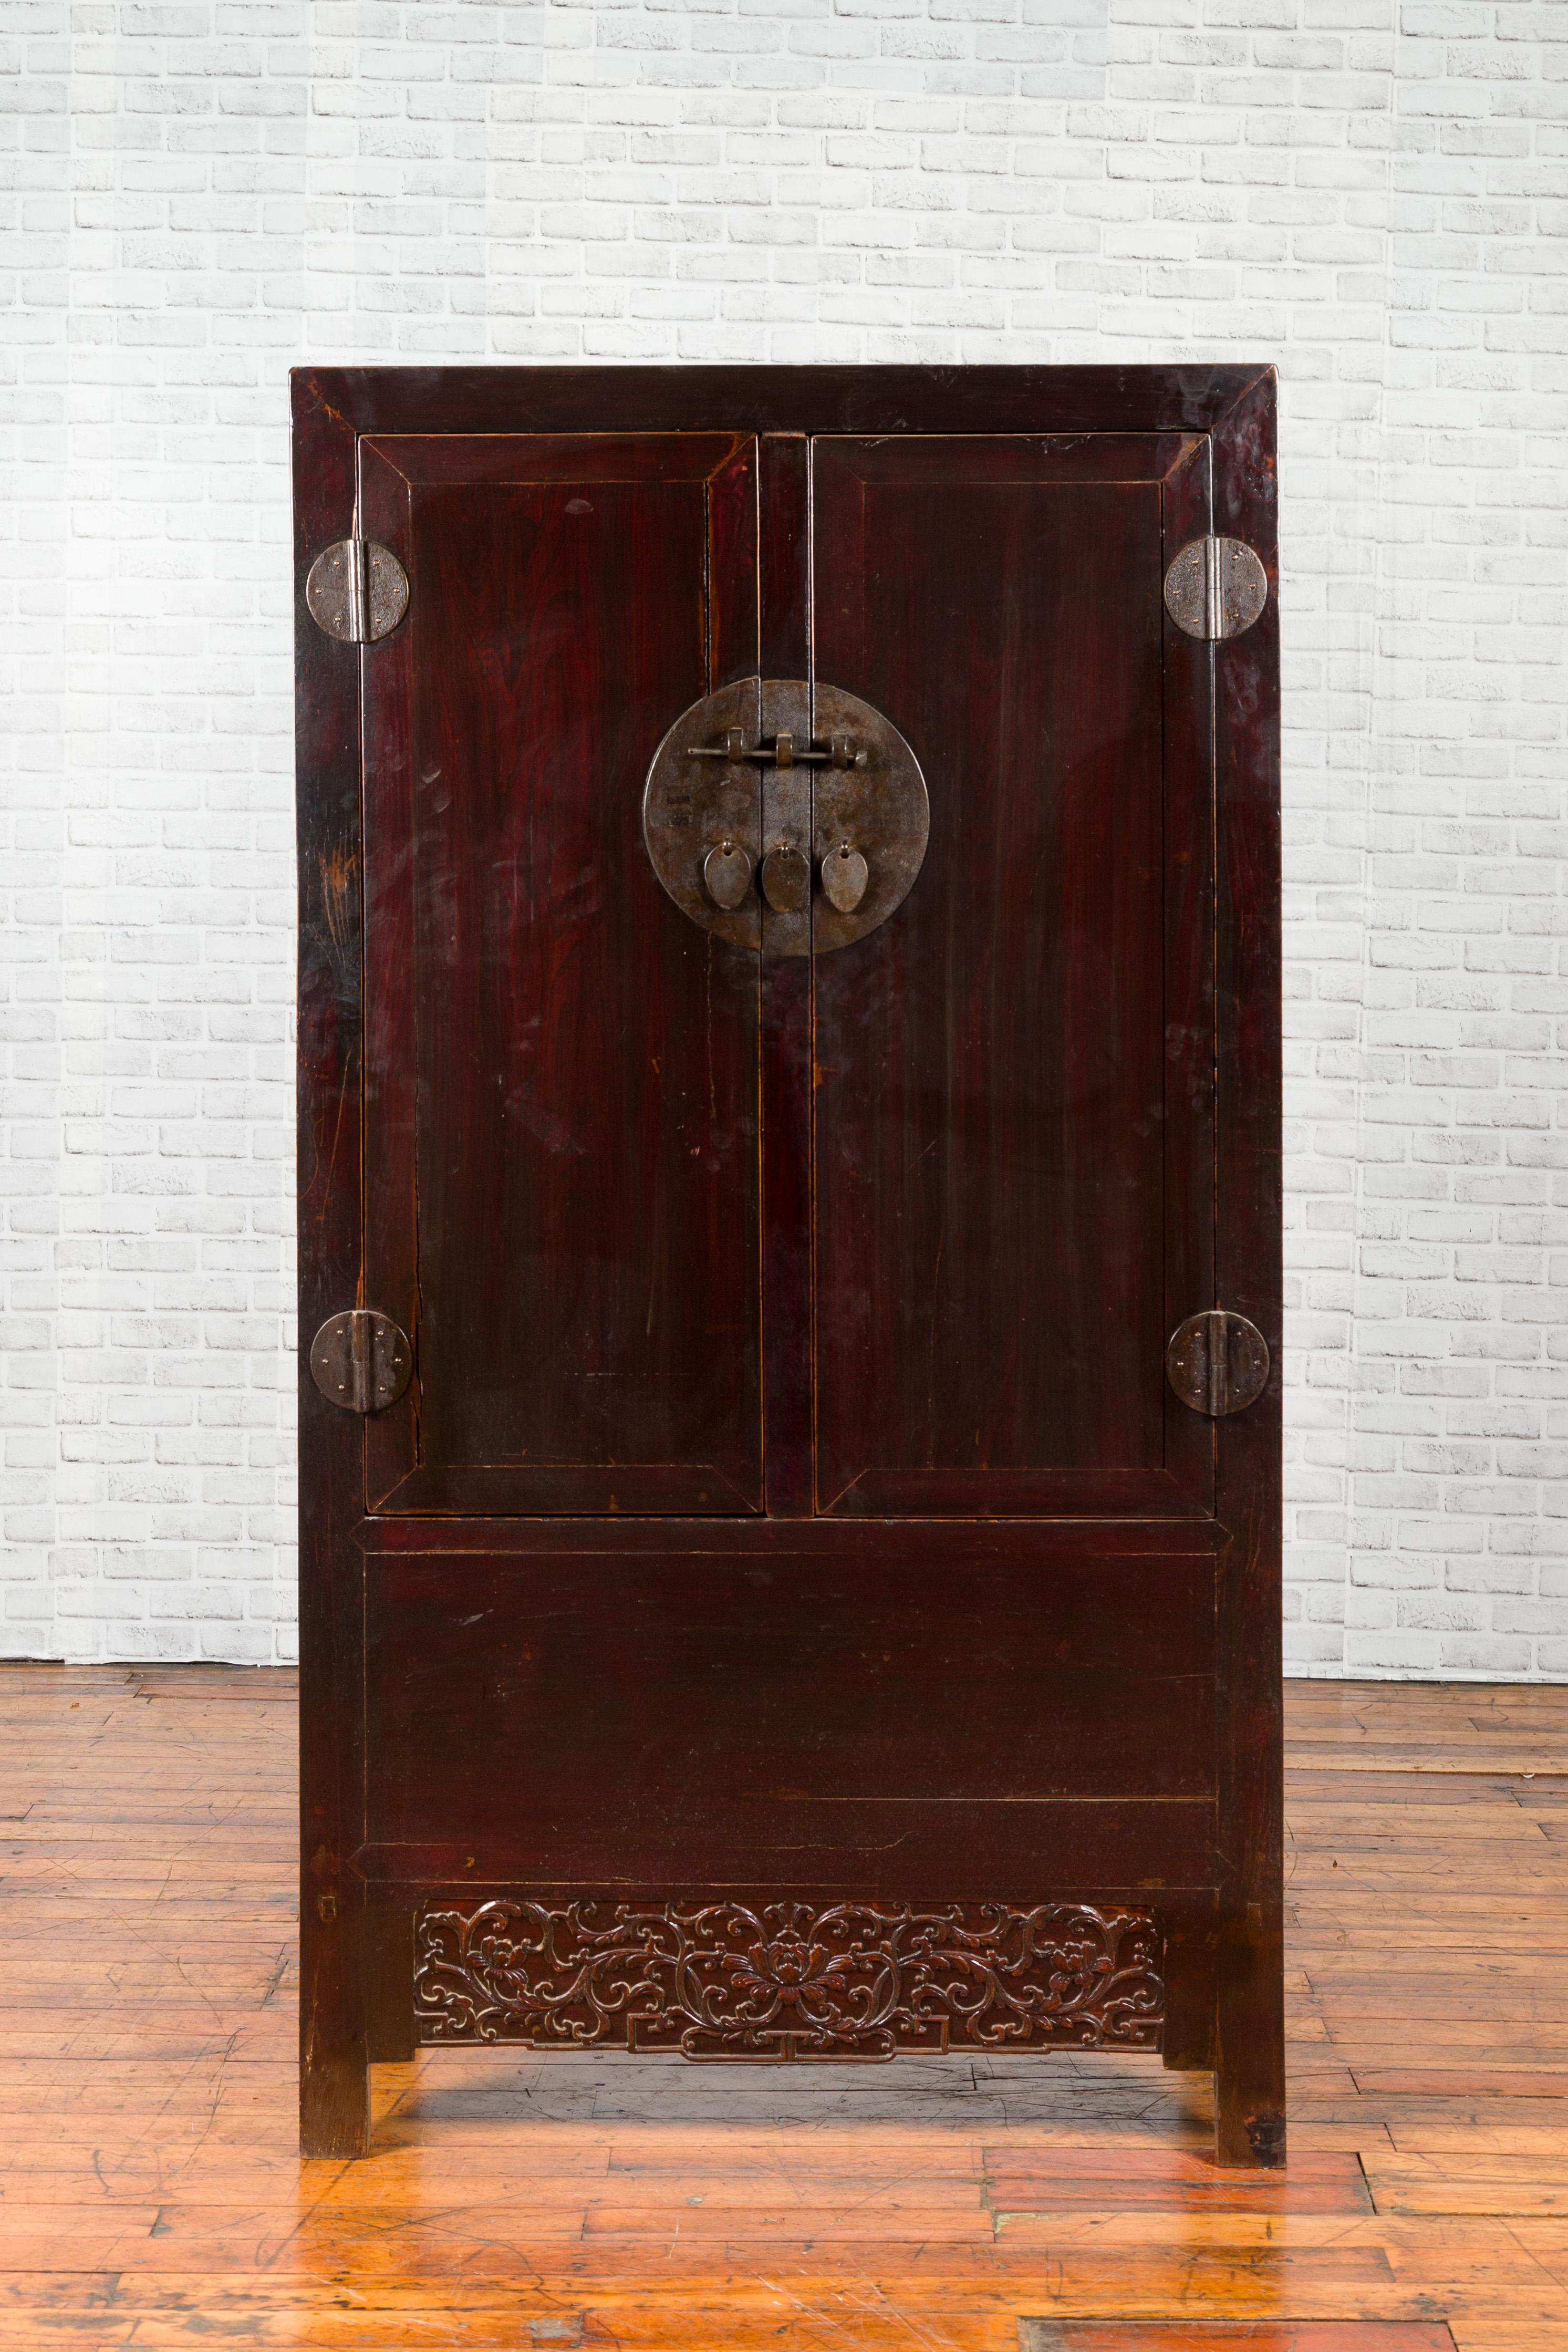 Armoire en laque brun foncé de la dynastie chinoise Qing du 19e siècle, avec feuillage sculpté et médaillons. Créé en Chine pendant la dynastie Qing, ce meuble présente une silhouette linéaire qui s'harmonise parfaitement avec la laque brune. Deux